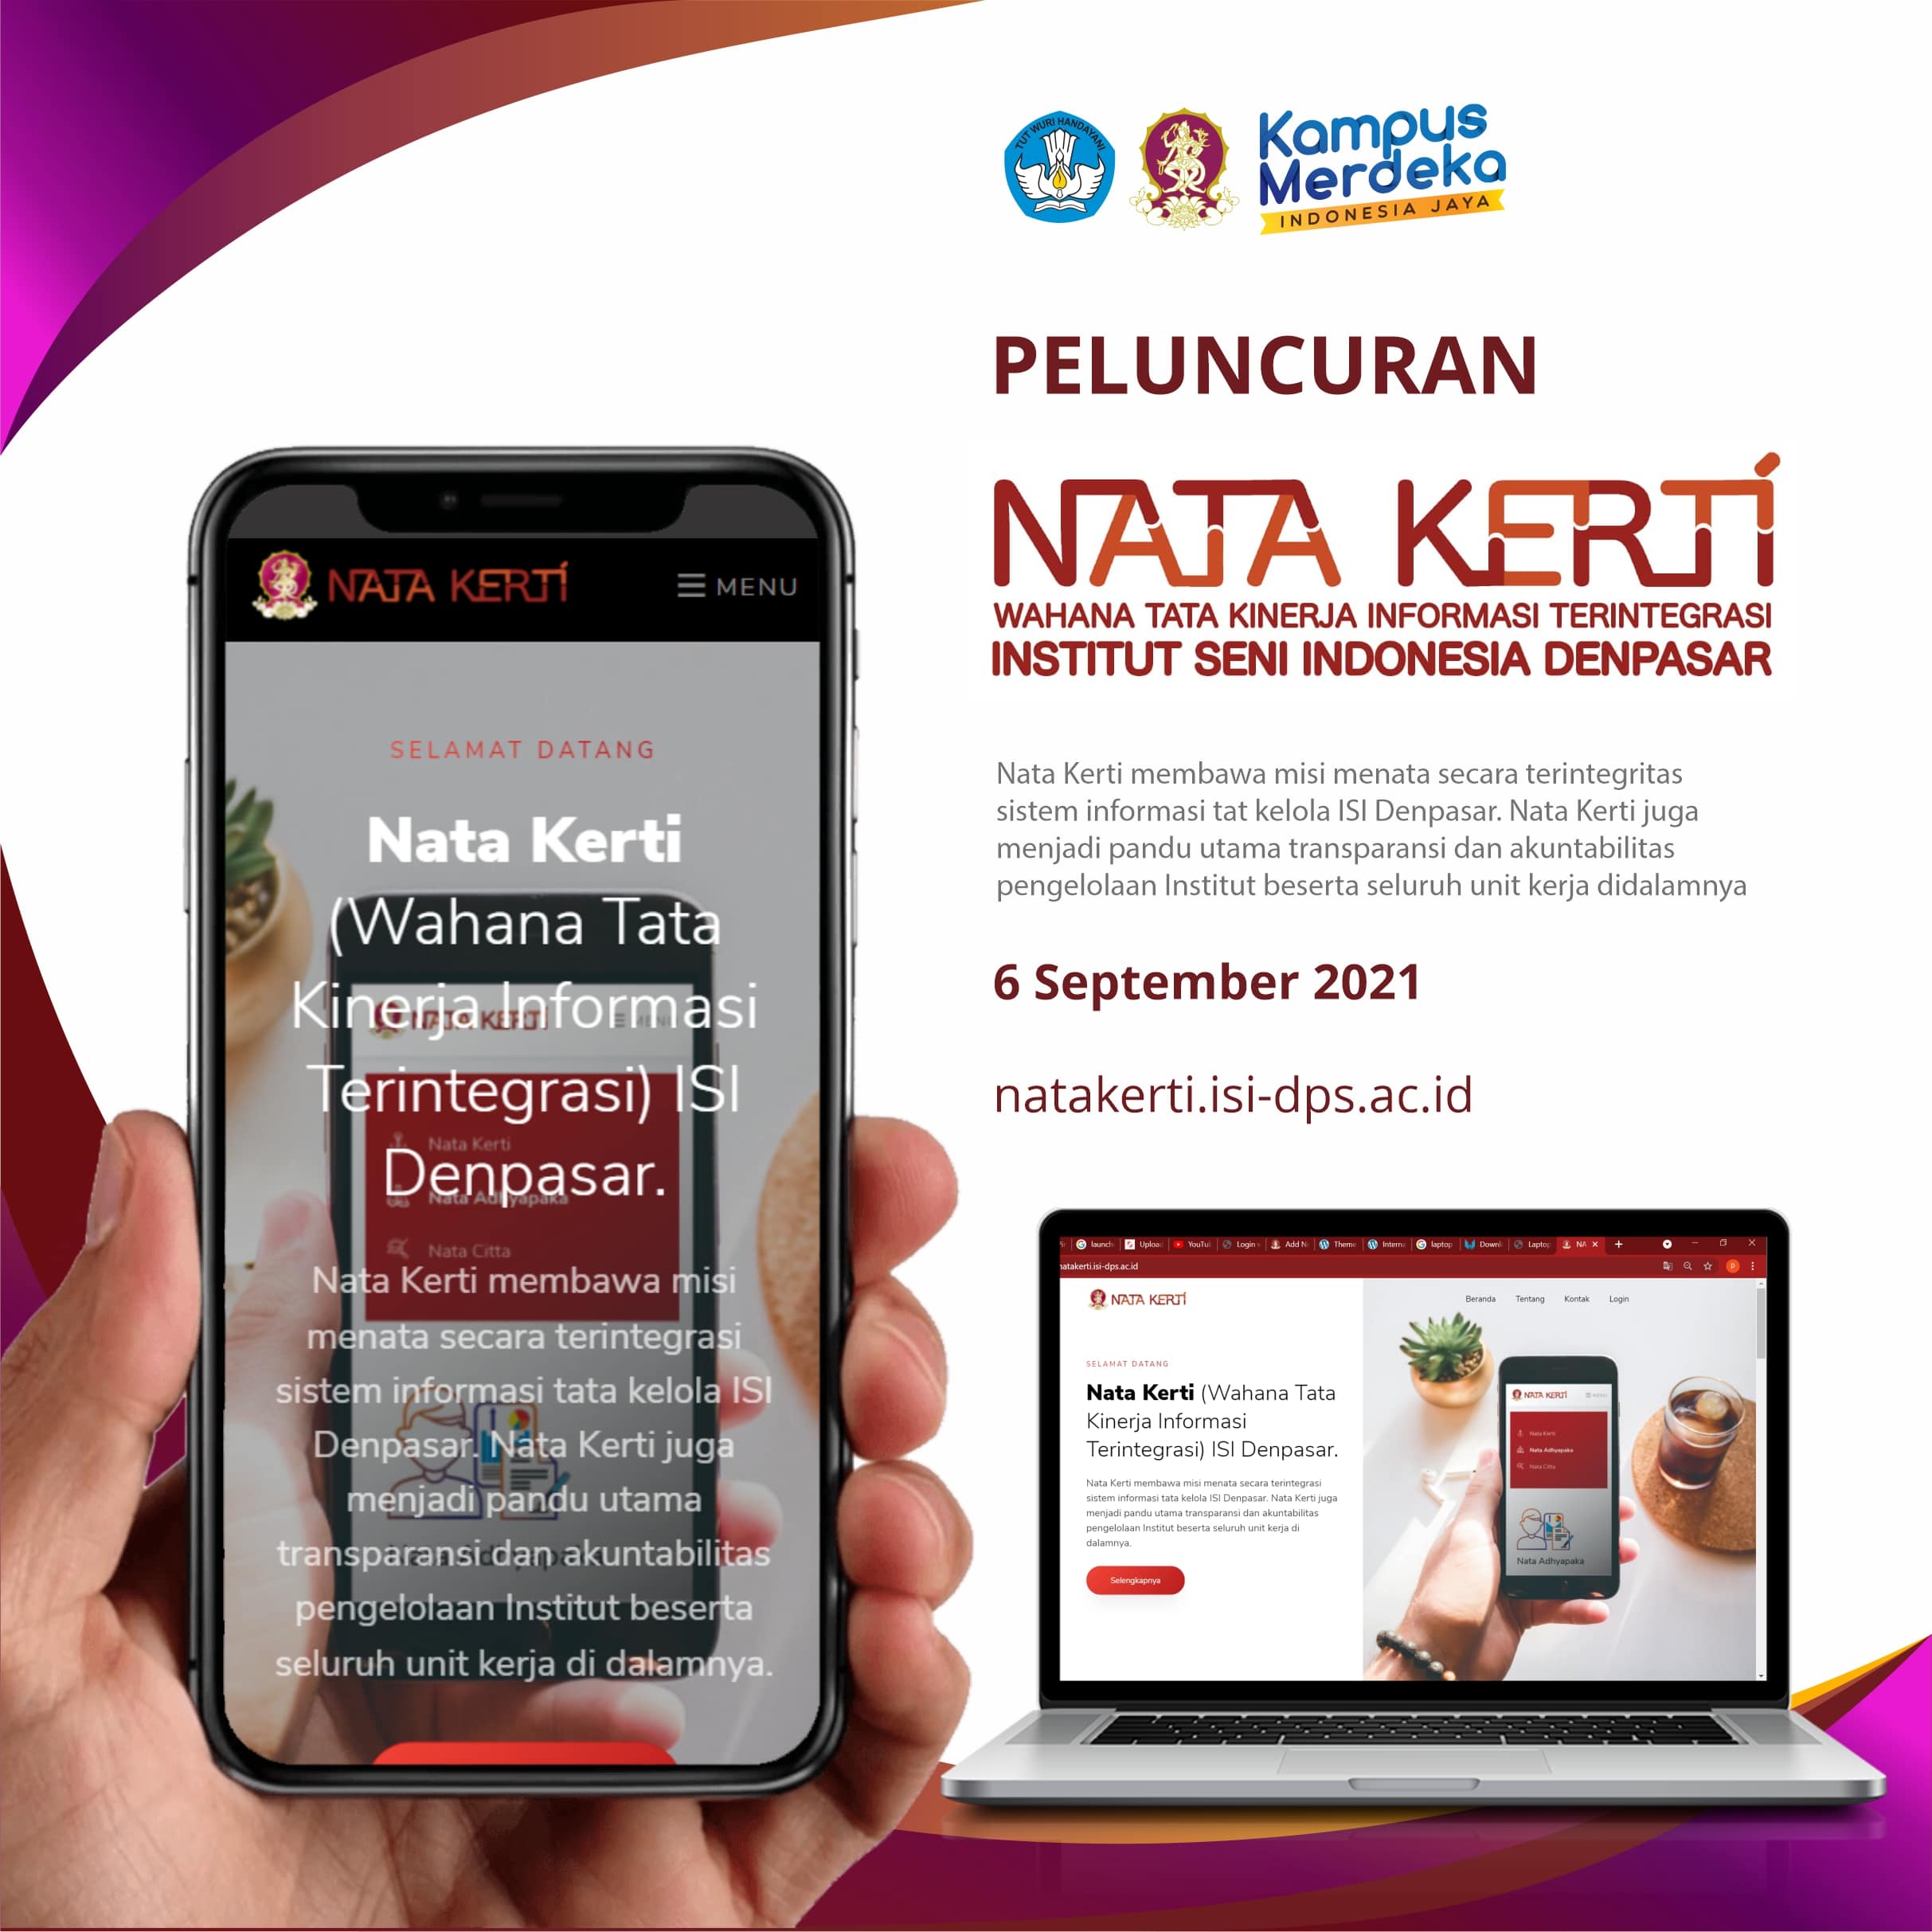 Peluncuran “Nata Kerti” Wahana Tata Kinerja Informasi Terintegritasi Institut Seni Indonesia Denpasar